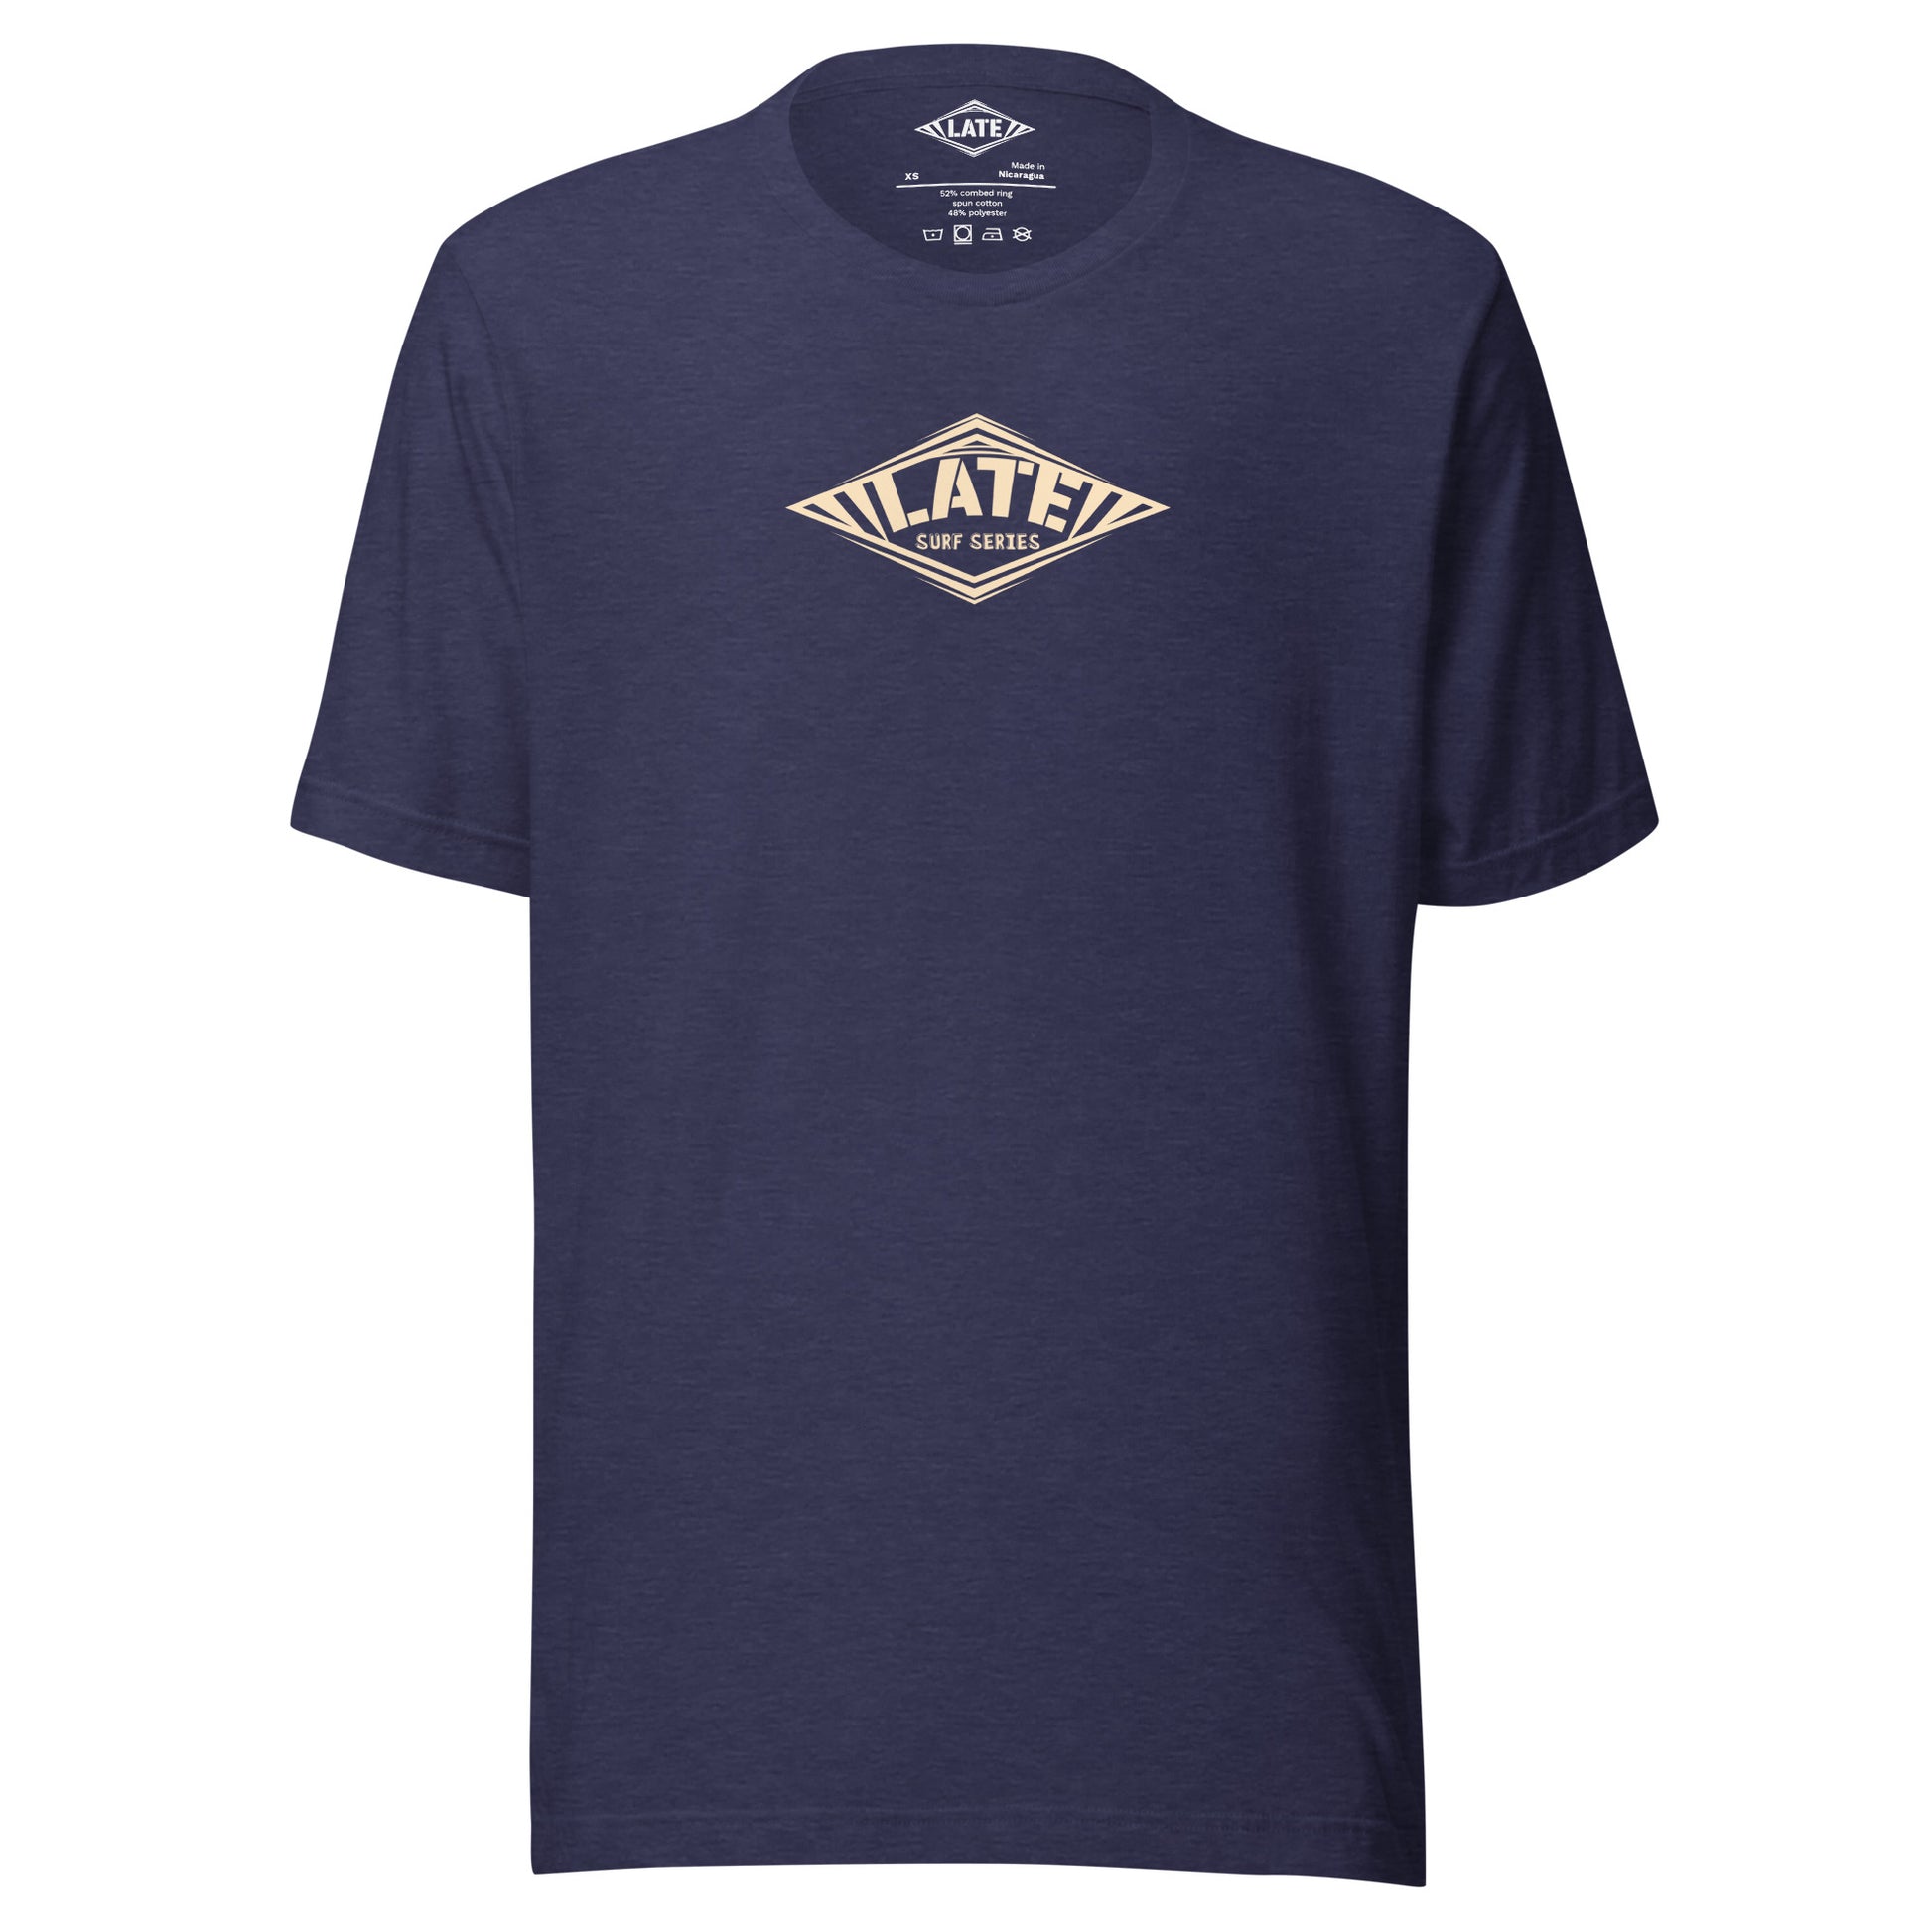 T-Shirt Take On The Elements style hurley texte surf series, et logo Late tshirt de face couleur bleu nuit